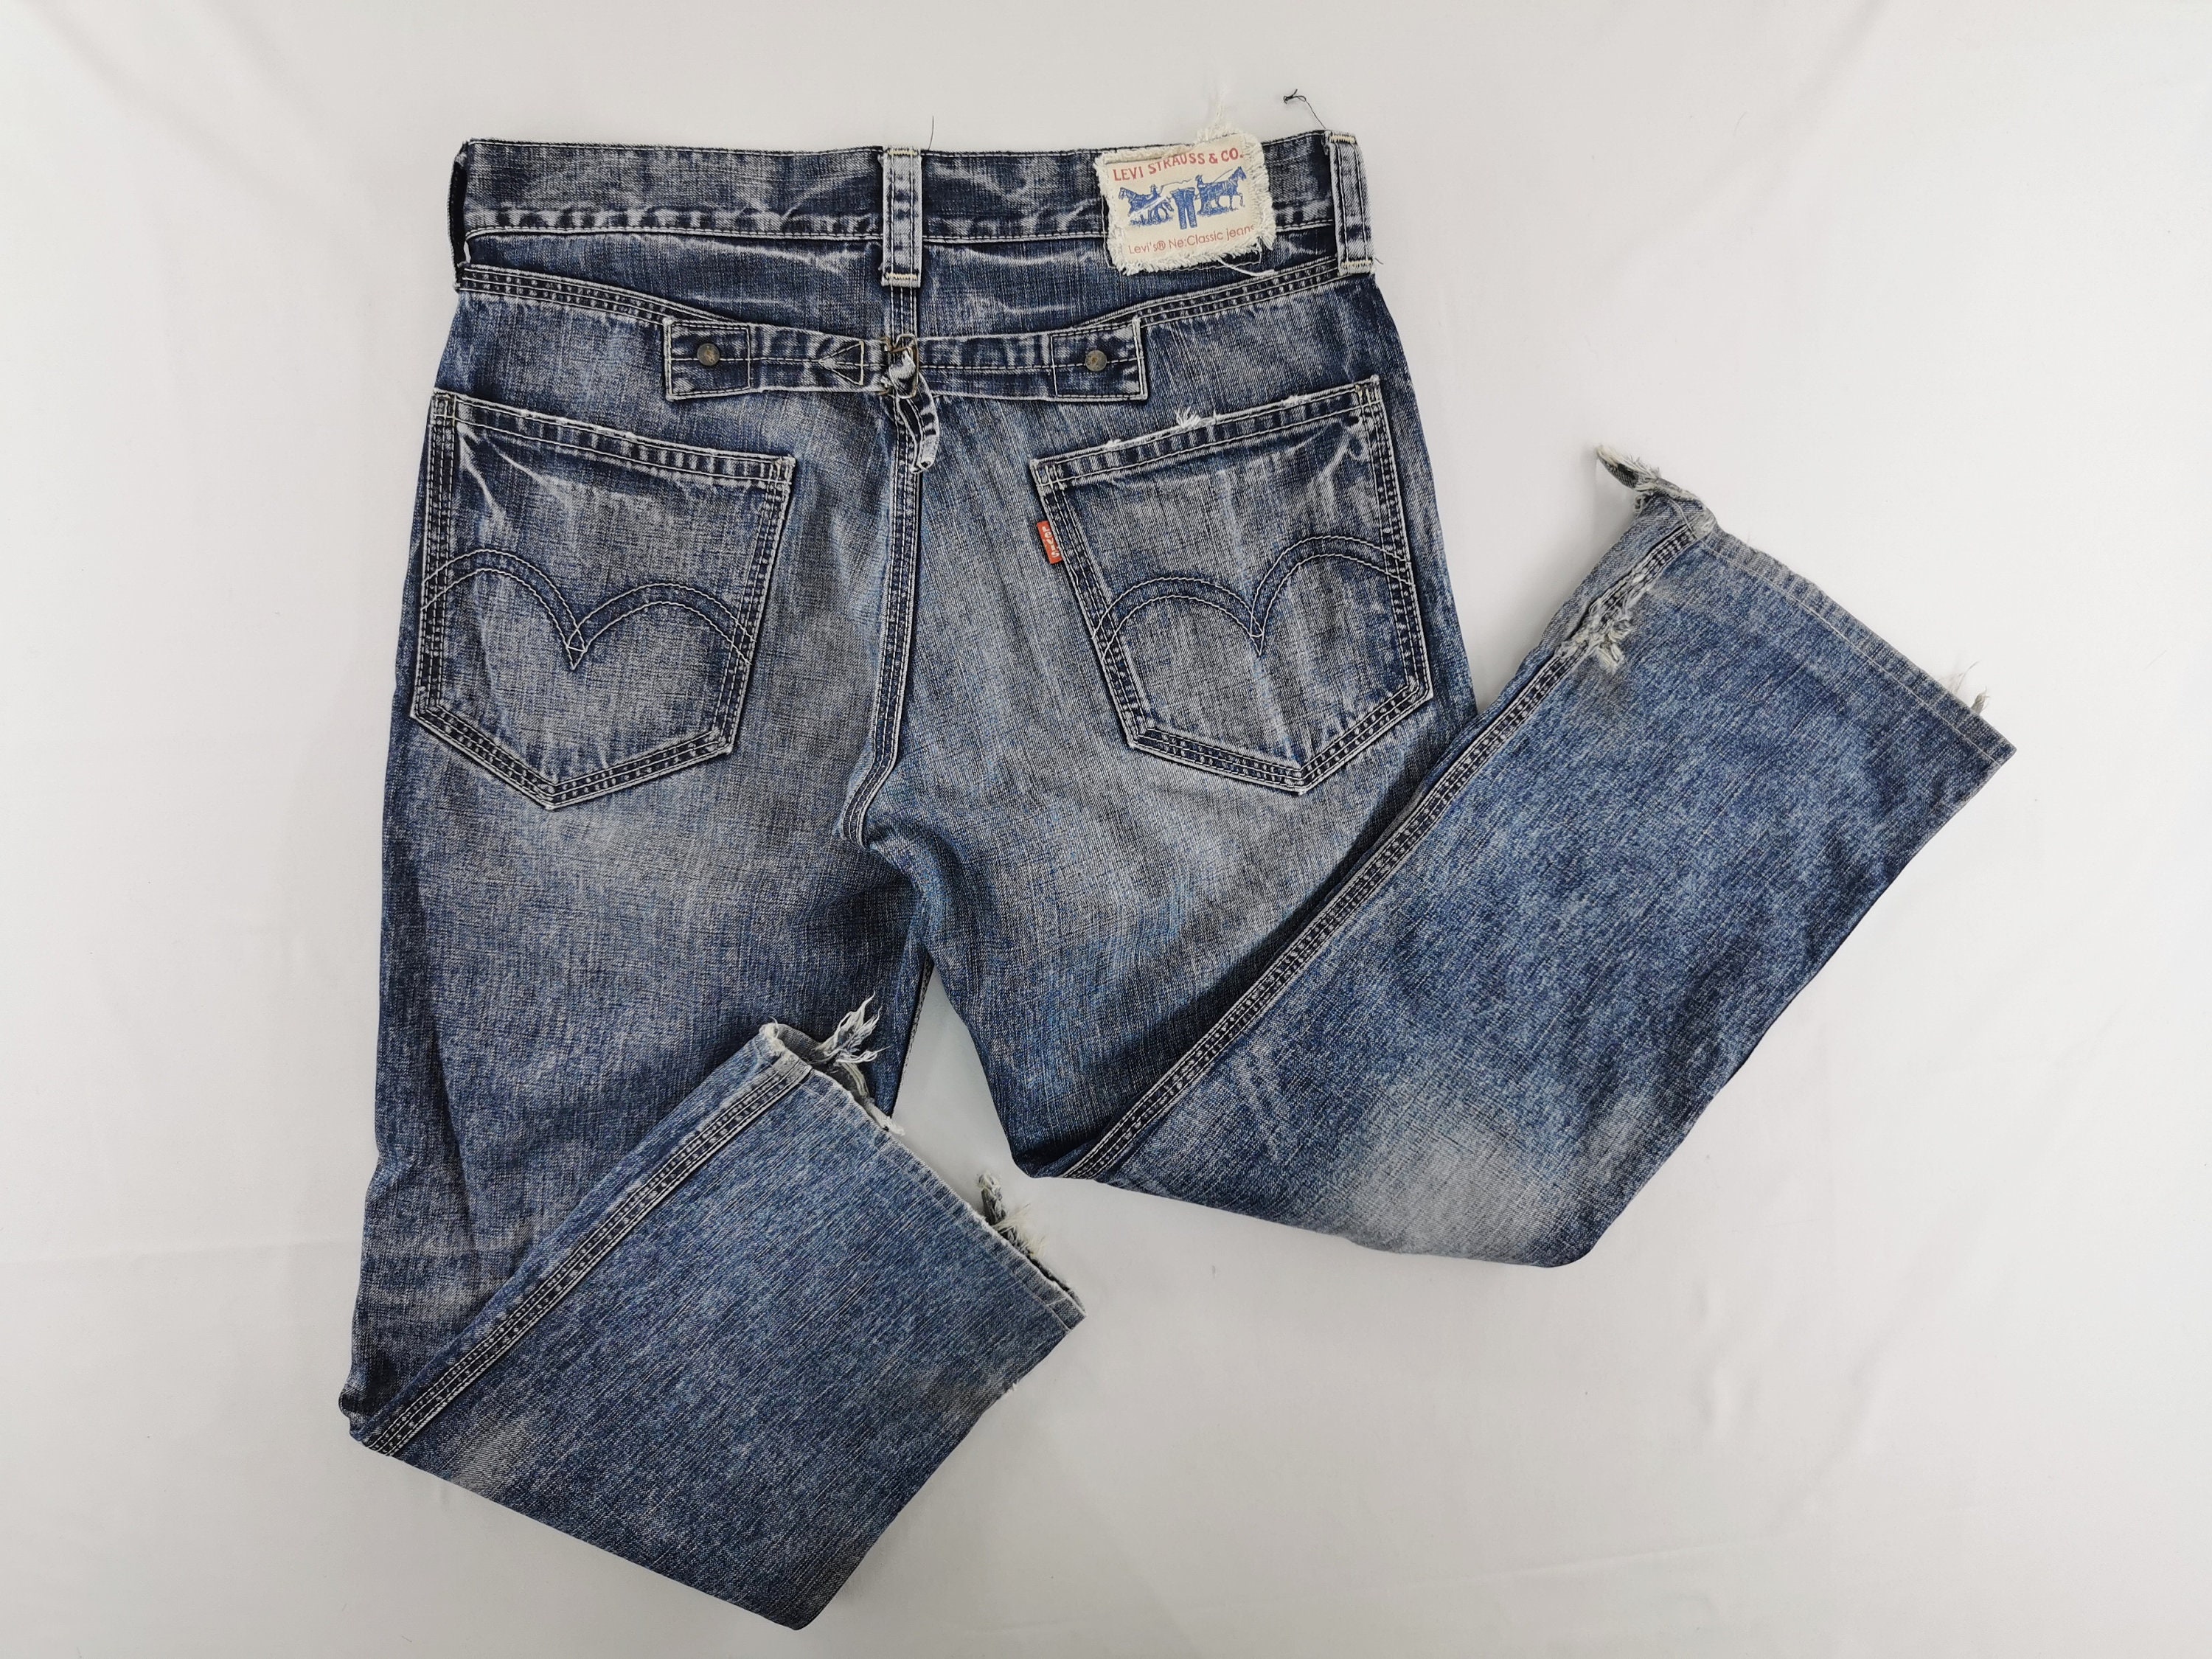 Levis Jeans Distressed Vintage Size 36 Levis Denim Pants Levis - Etsy Israel